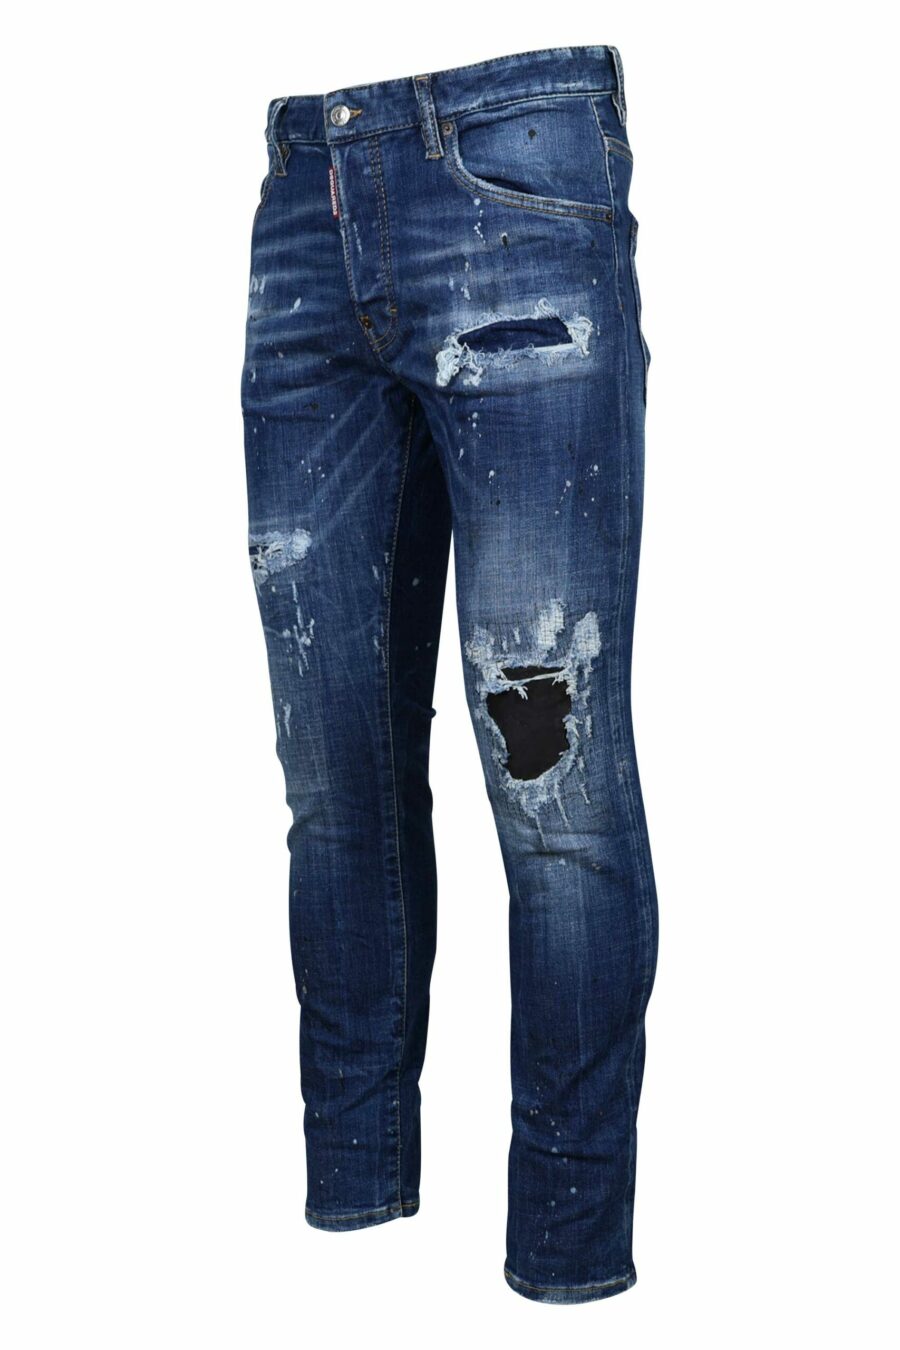 Blaue "Skater-Jeans" mit Rissen und ausgefranst - 8054148124687 1 1 skaliert